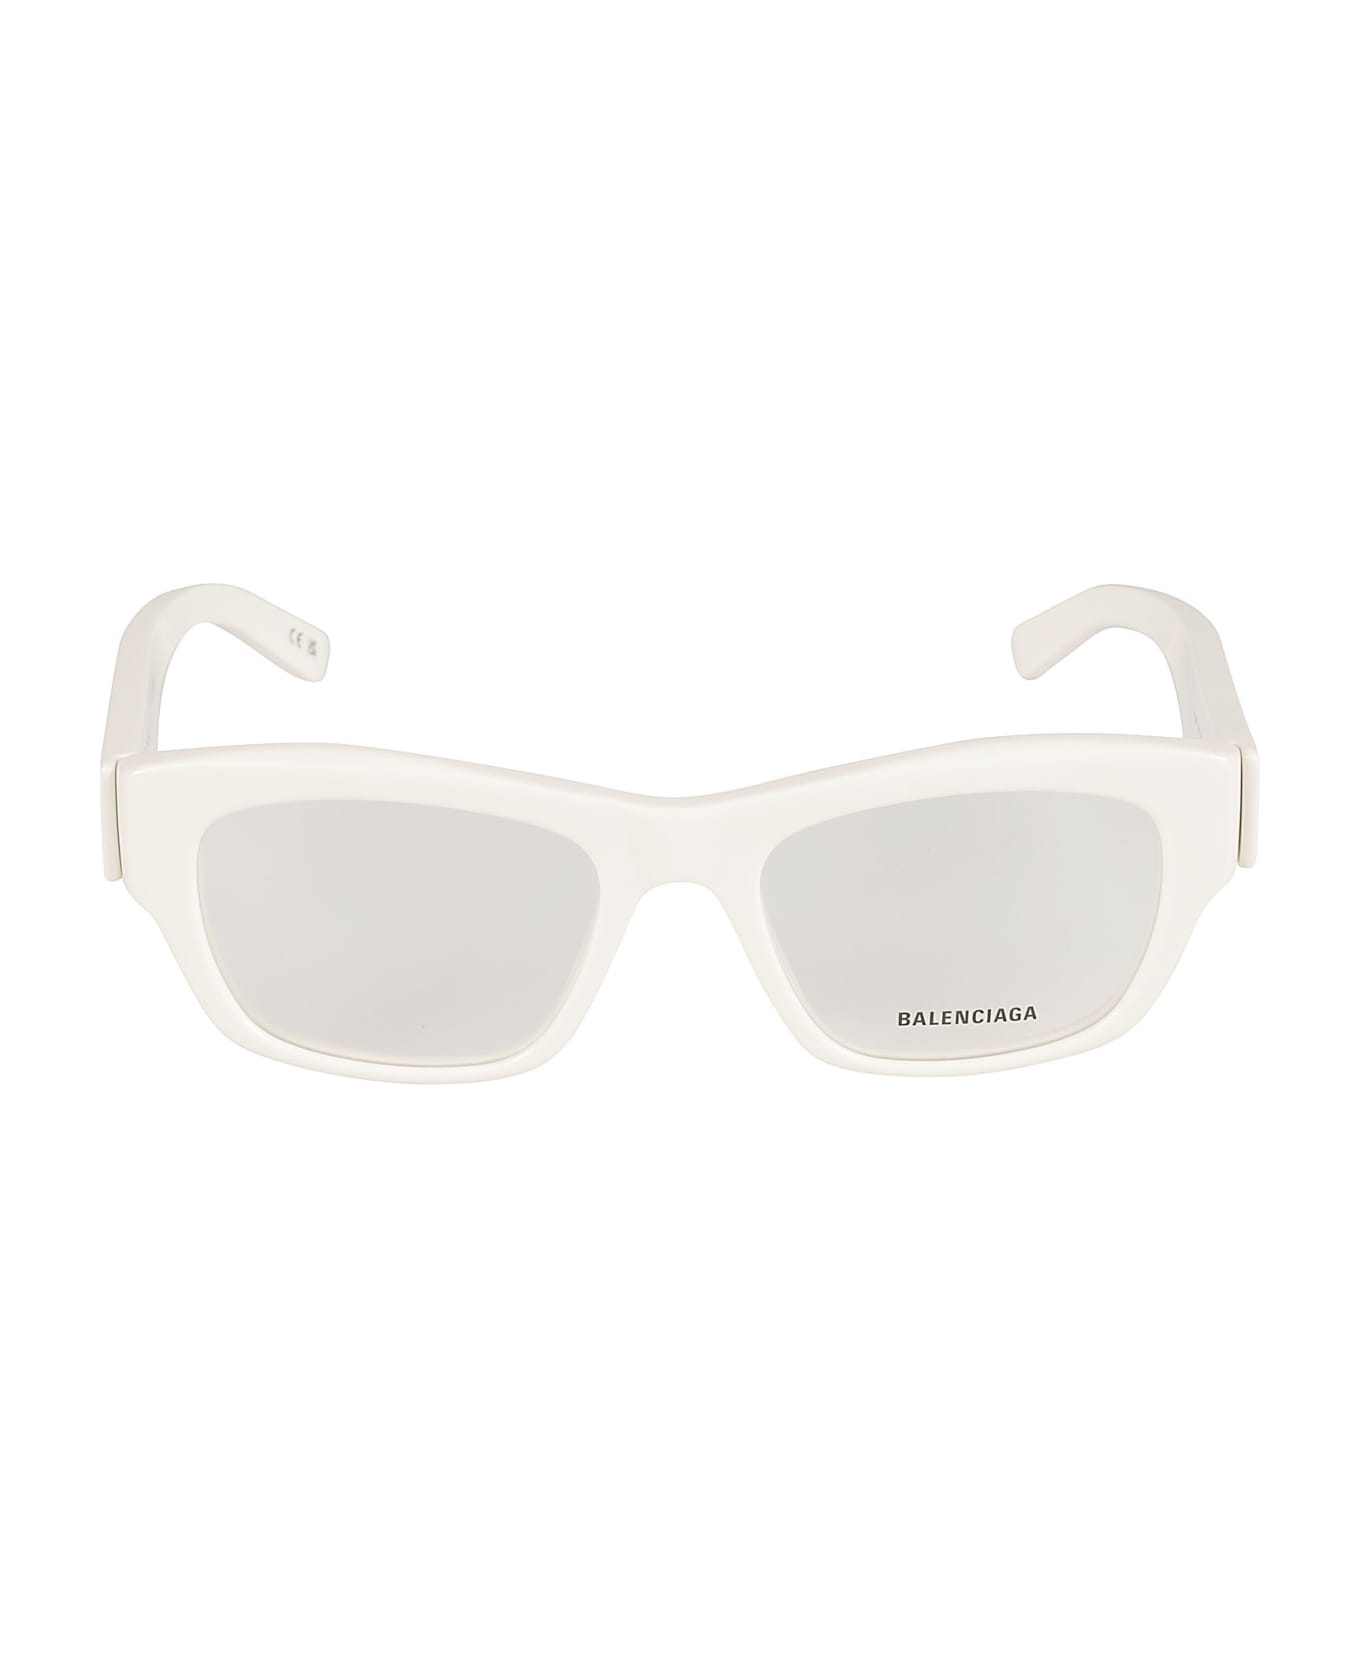 Balenciaga Eyewear Square Frame Logo Sided Glasses - White/Transparent アイウェア